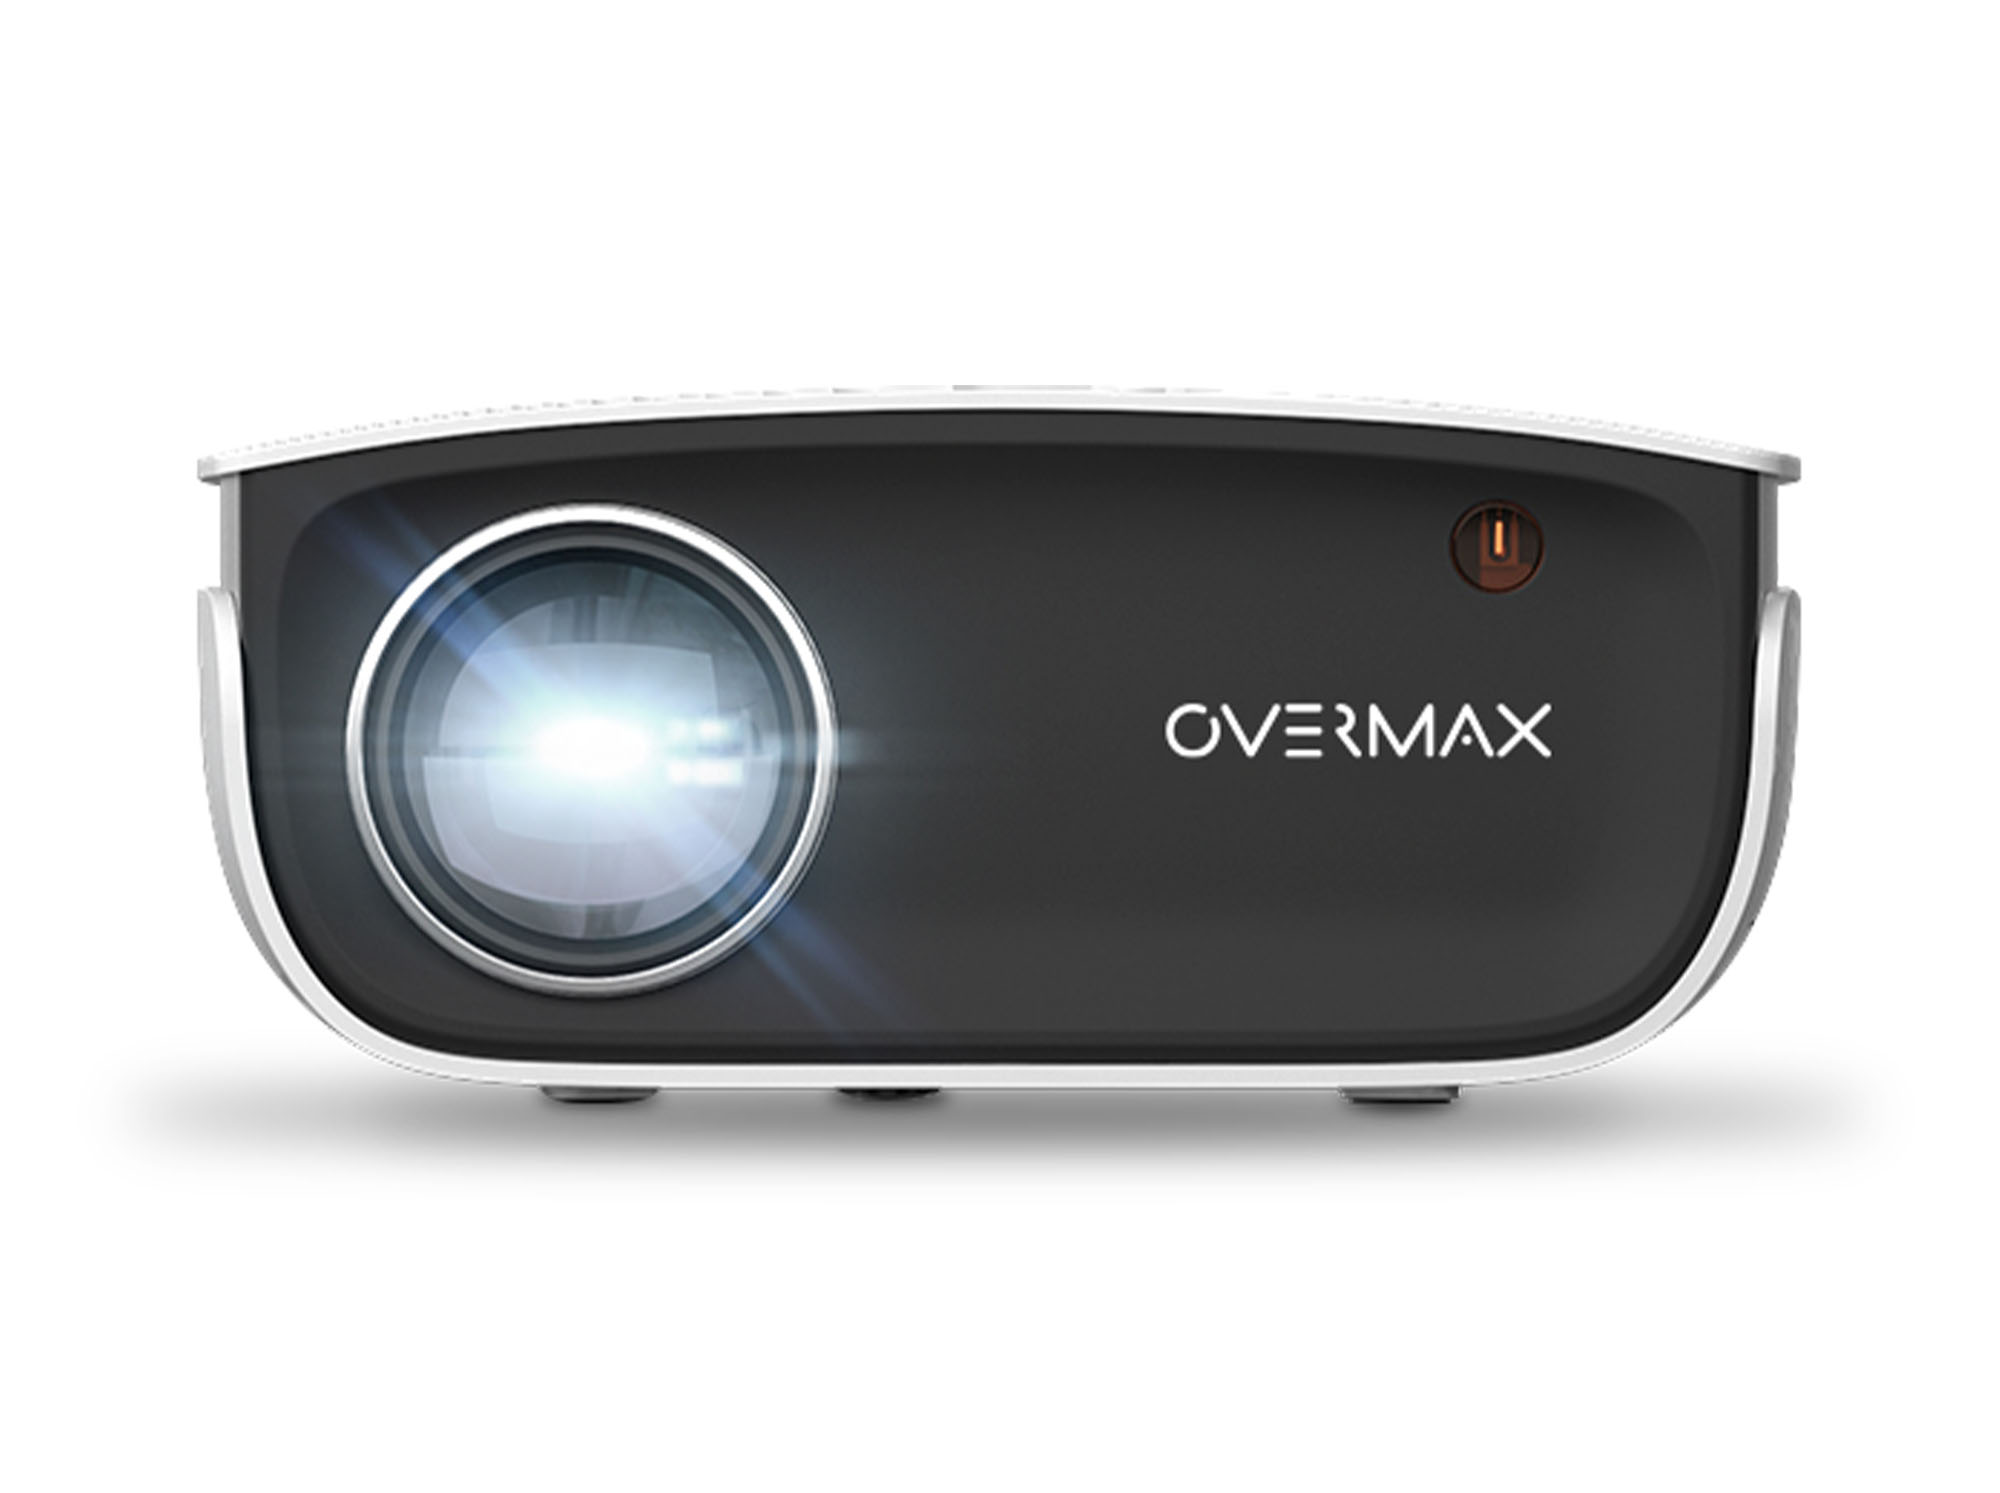 Stwórz prawdziwe kino w swoim domu z projektorem Overmax Multipic 2.5